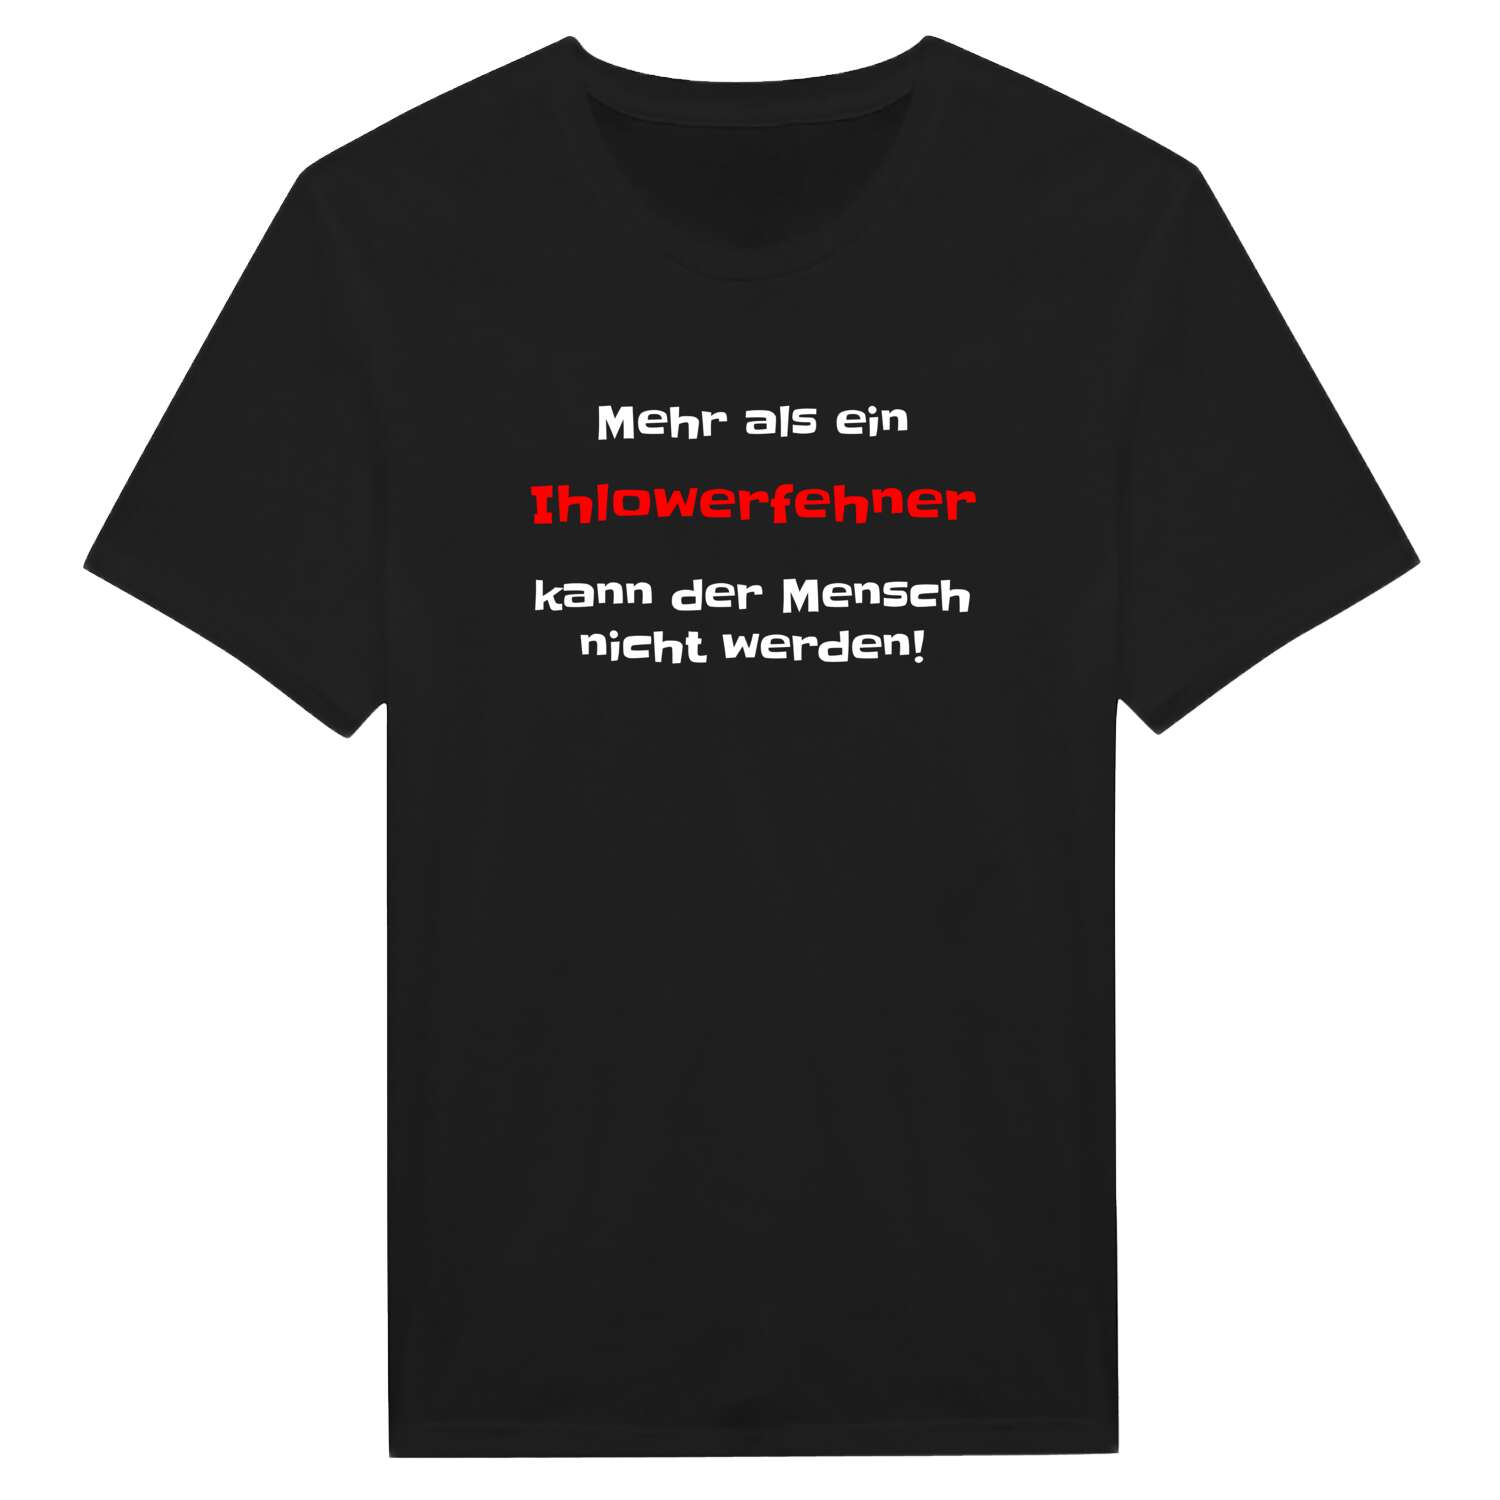 Ihlowerfehn T-Shirt »Mehr als ein«